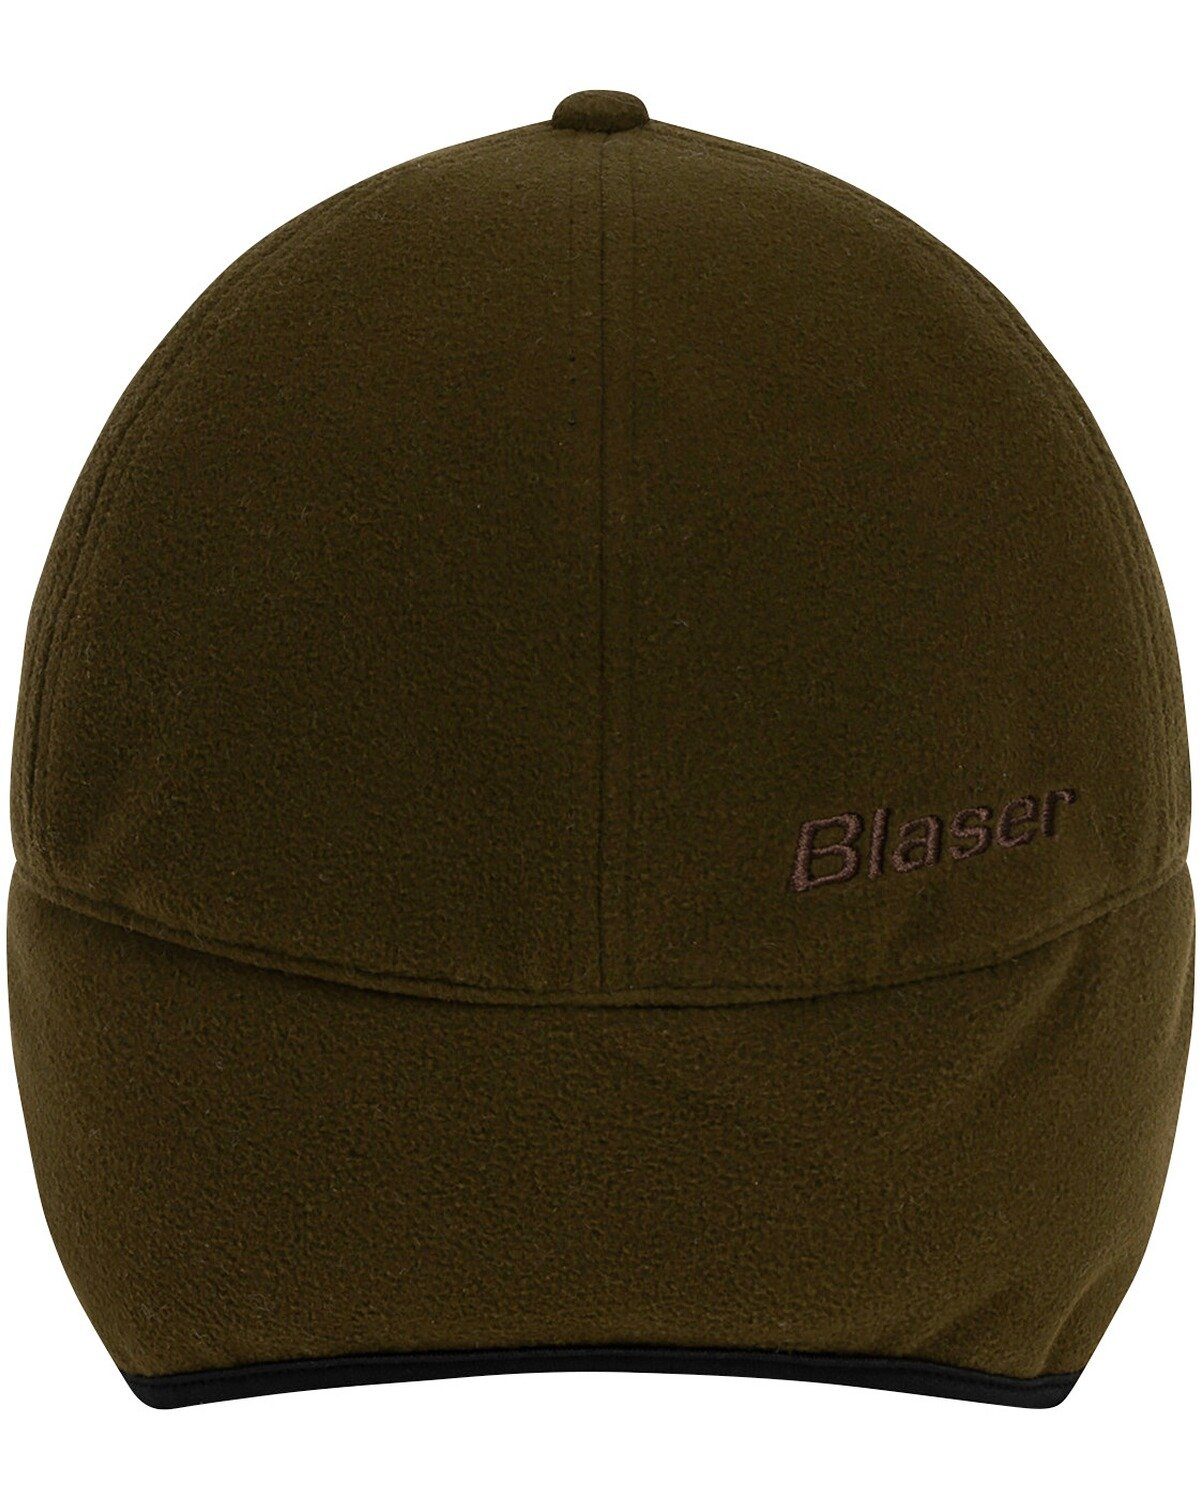 Blaser Baseball Insulated Winter Cap Fleece-Cap